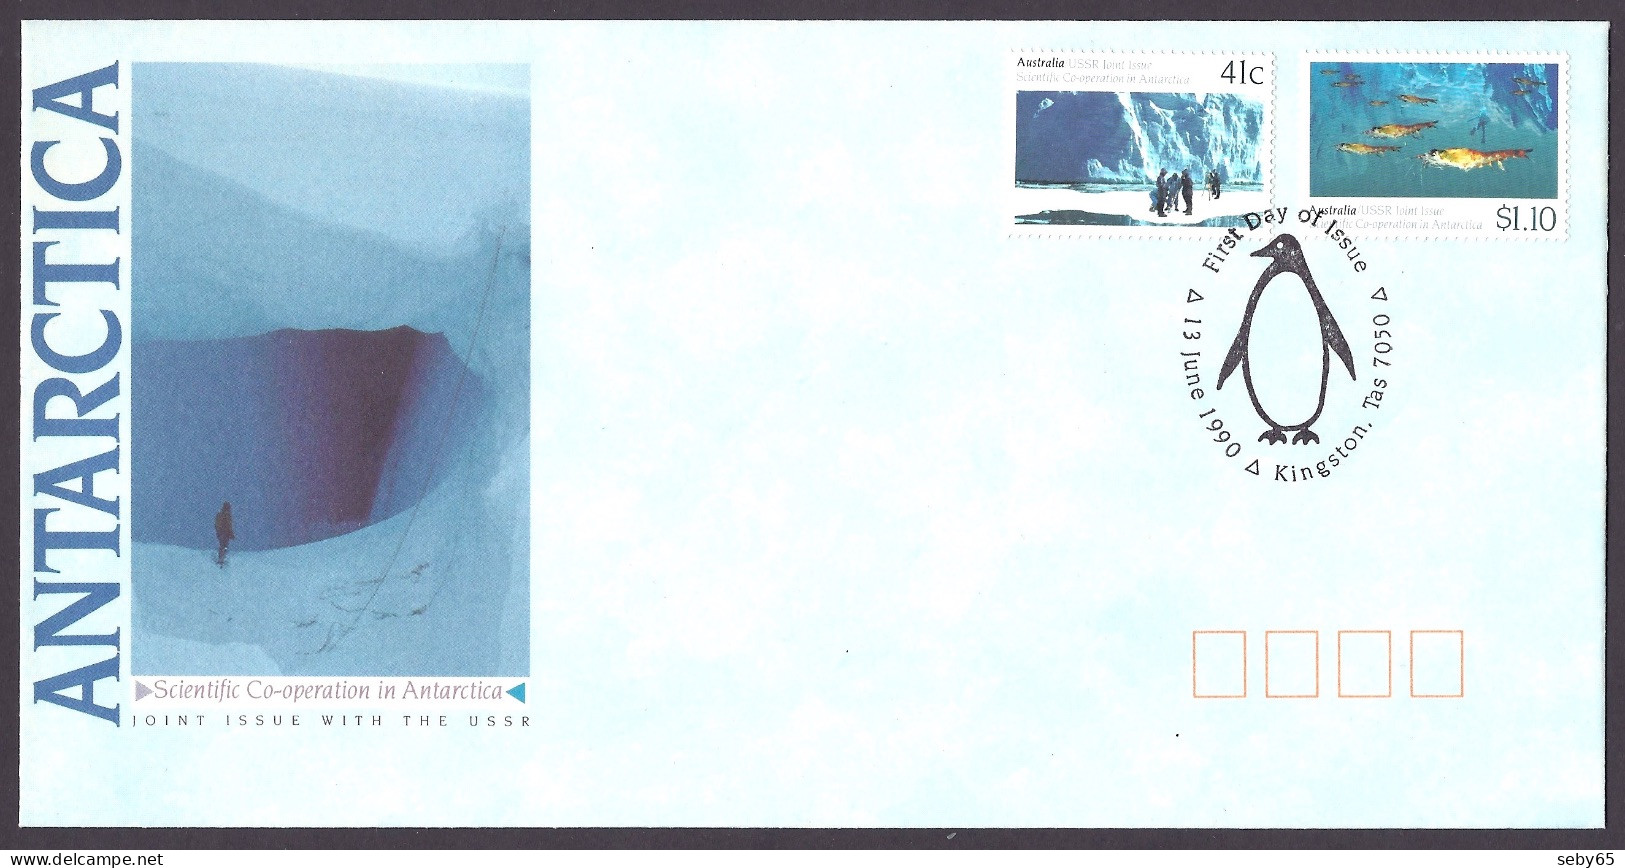 Australia 1990 - Antarctica, USSR Joint Issue, Scientific Co-operation, Glaciers, South Pole, Antarctic, Russia - FDC - Primo Giorno D'emissione (FDC)